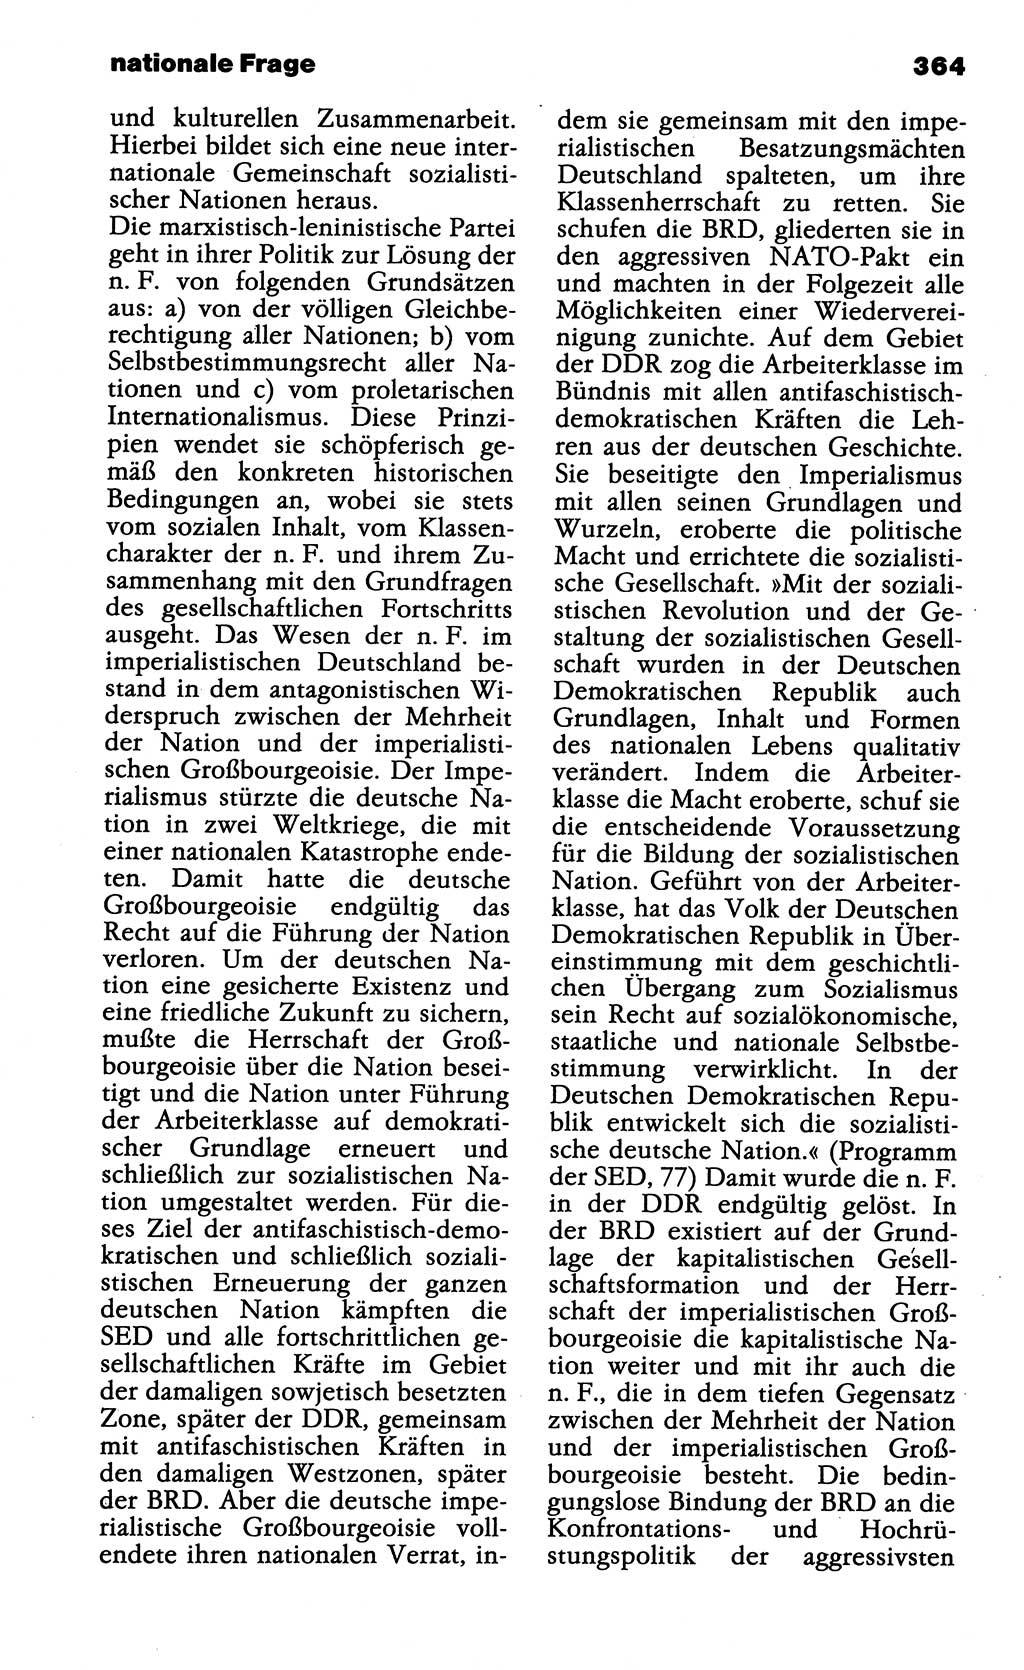 Wörterbuch der marxistisch-leninistischen Philosophie [Deutsche Demokratische Republik (DDR)] 1985, Seite 364 (Wb. ML Phil. DDR 1985, S. 364)